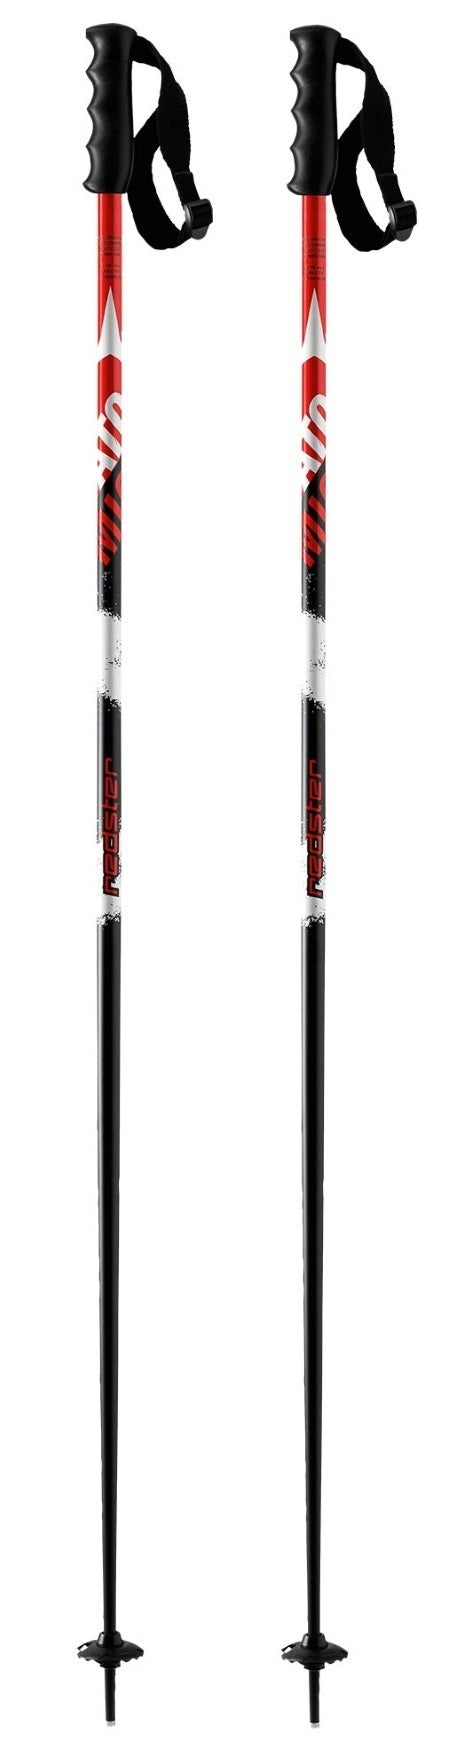 Atomic Amt Ski Poles red/black Cod.aj5005214 